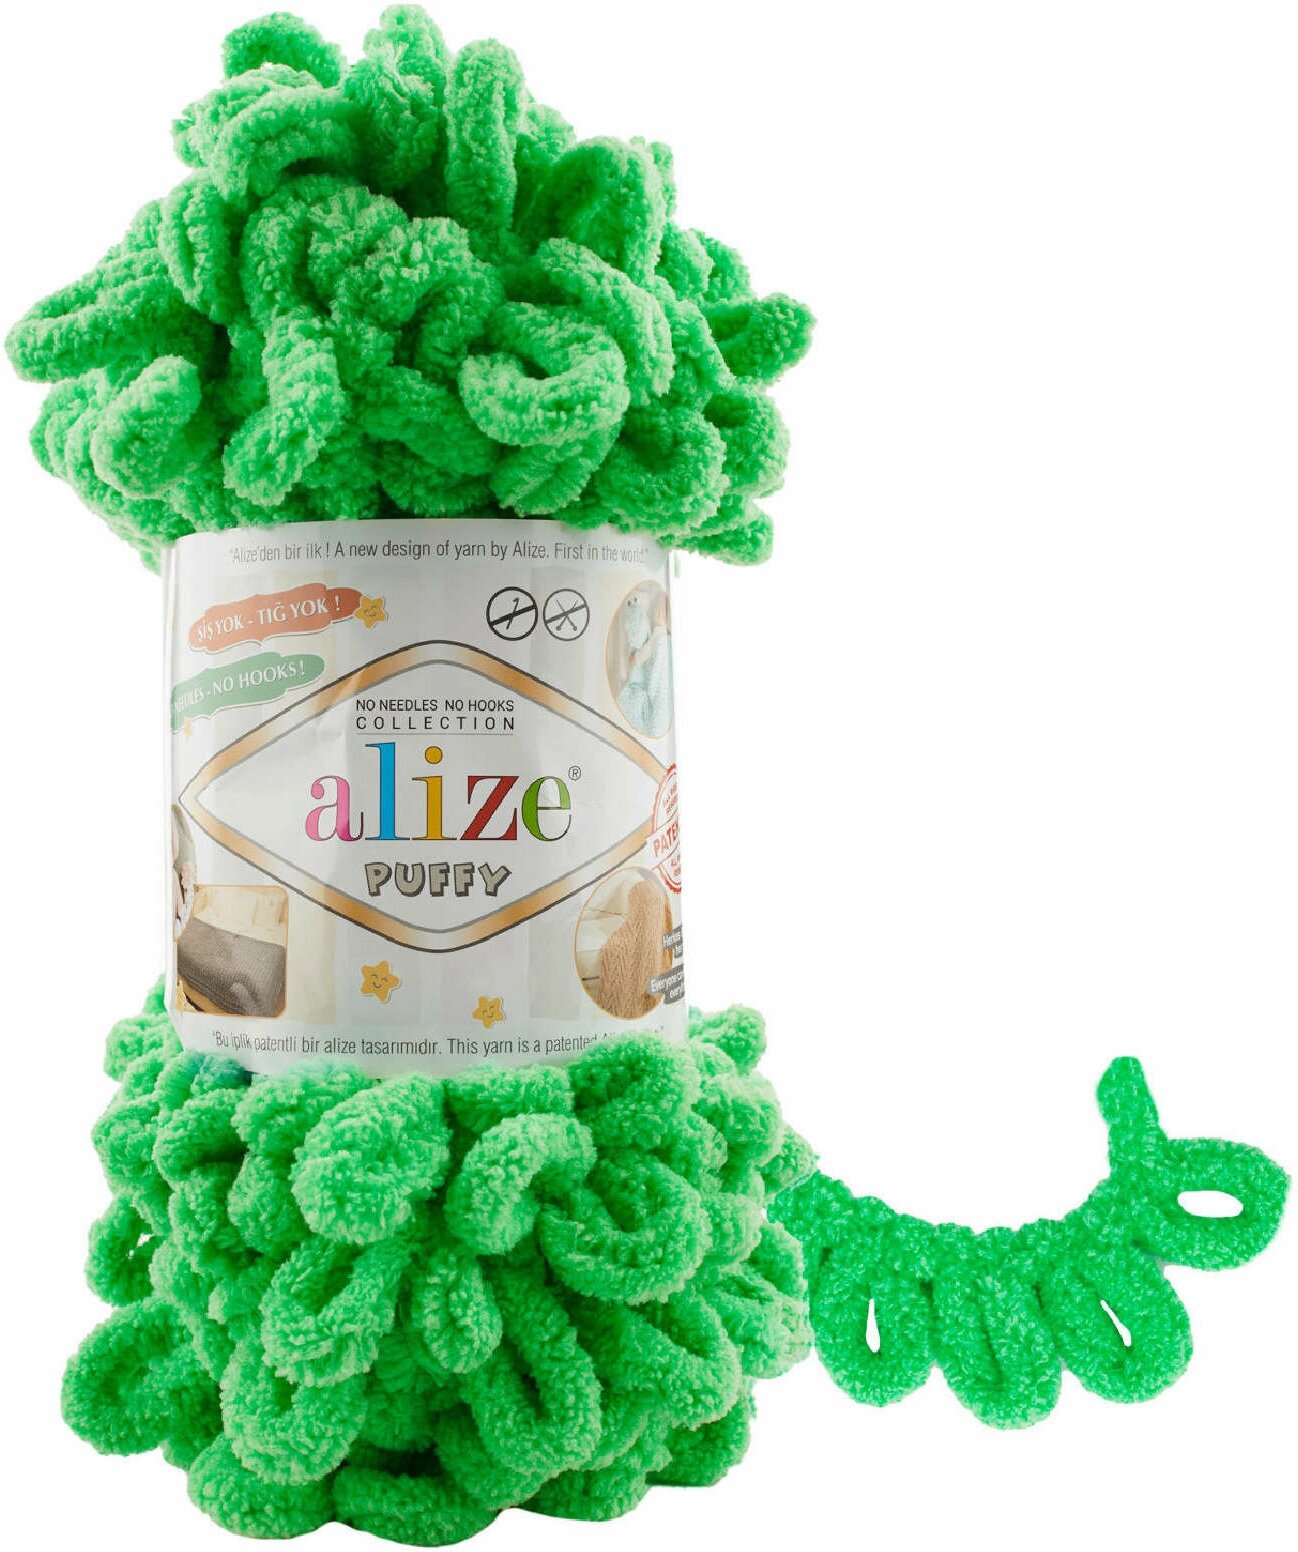 Пряжа Alize Puffy весенняя зелень (778), 100%микрополиэстер, 9м, 100г, 5шт